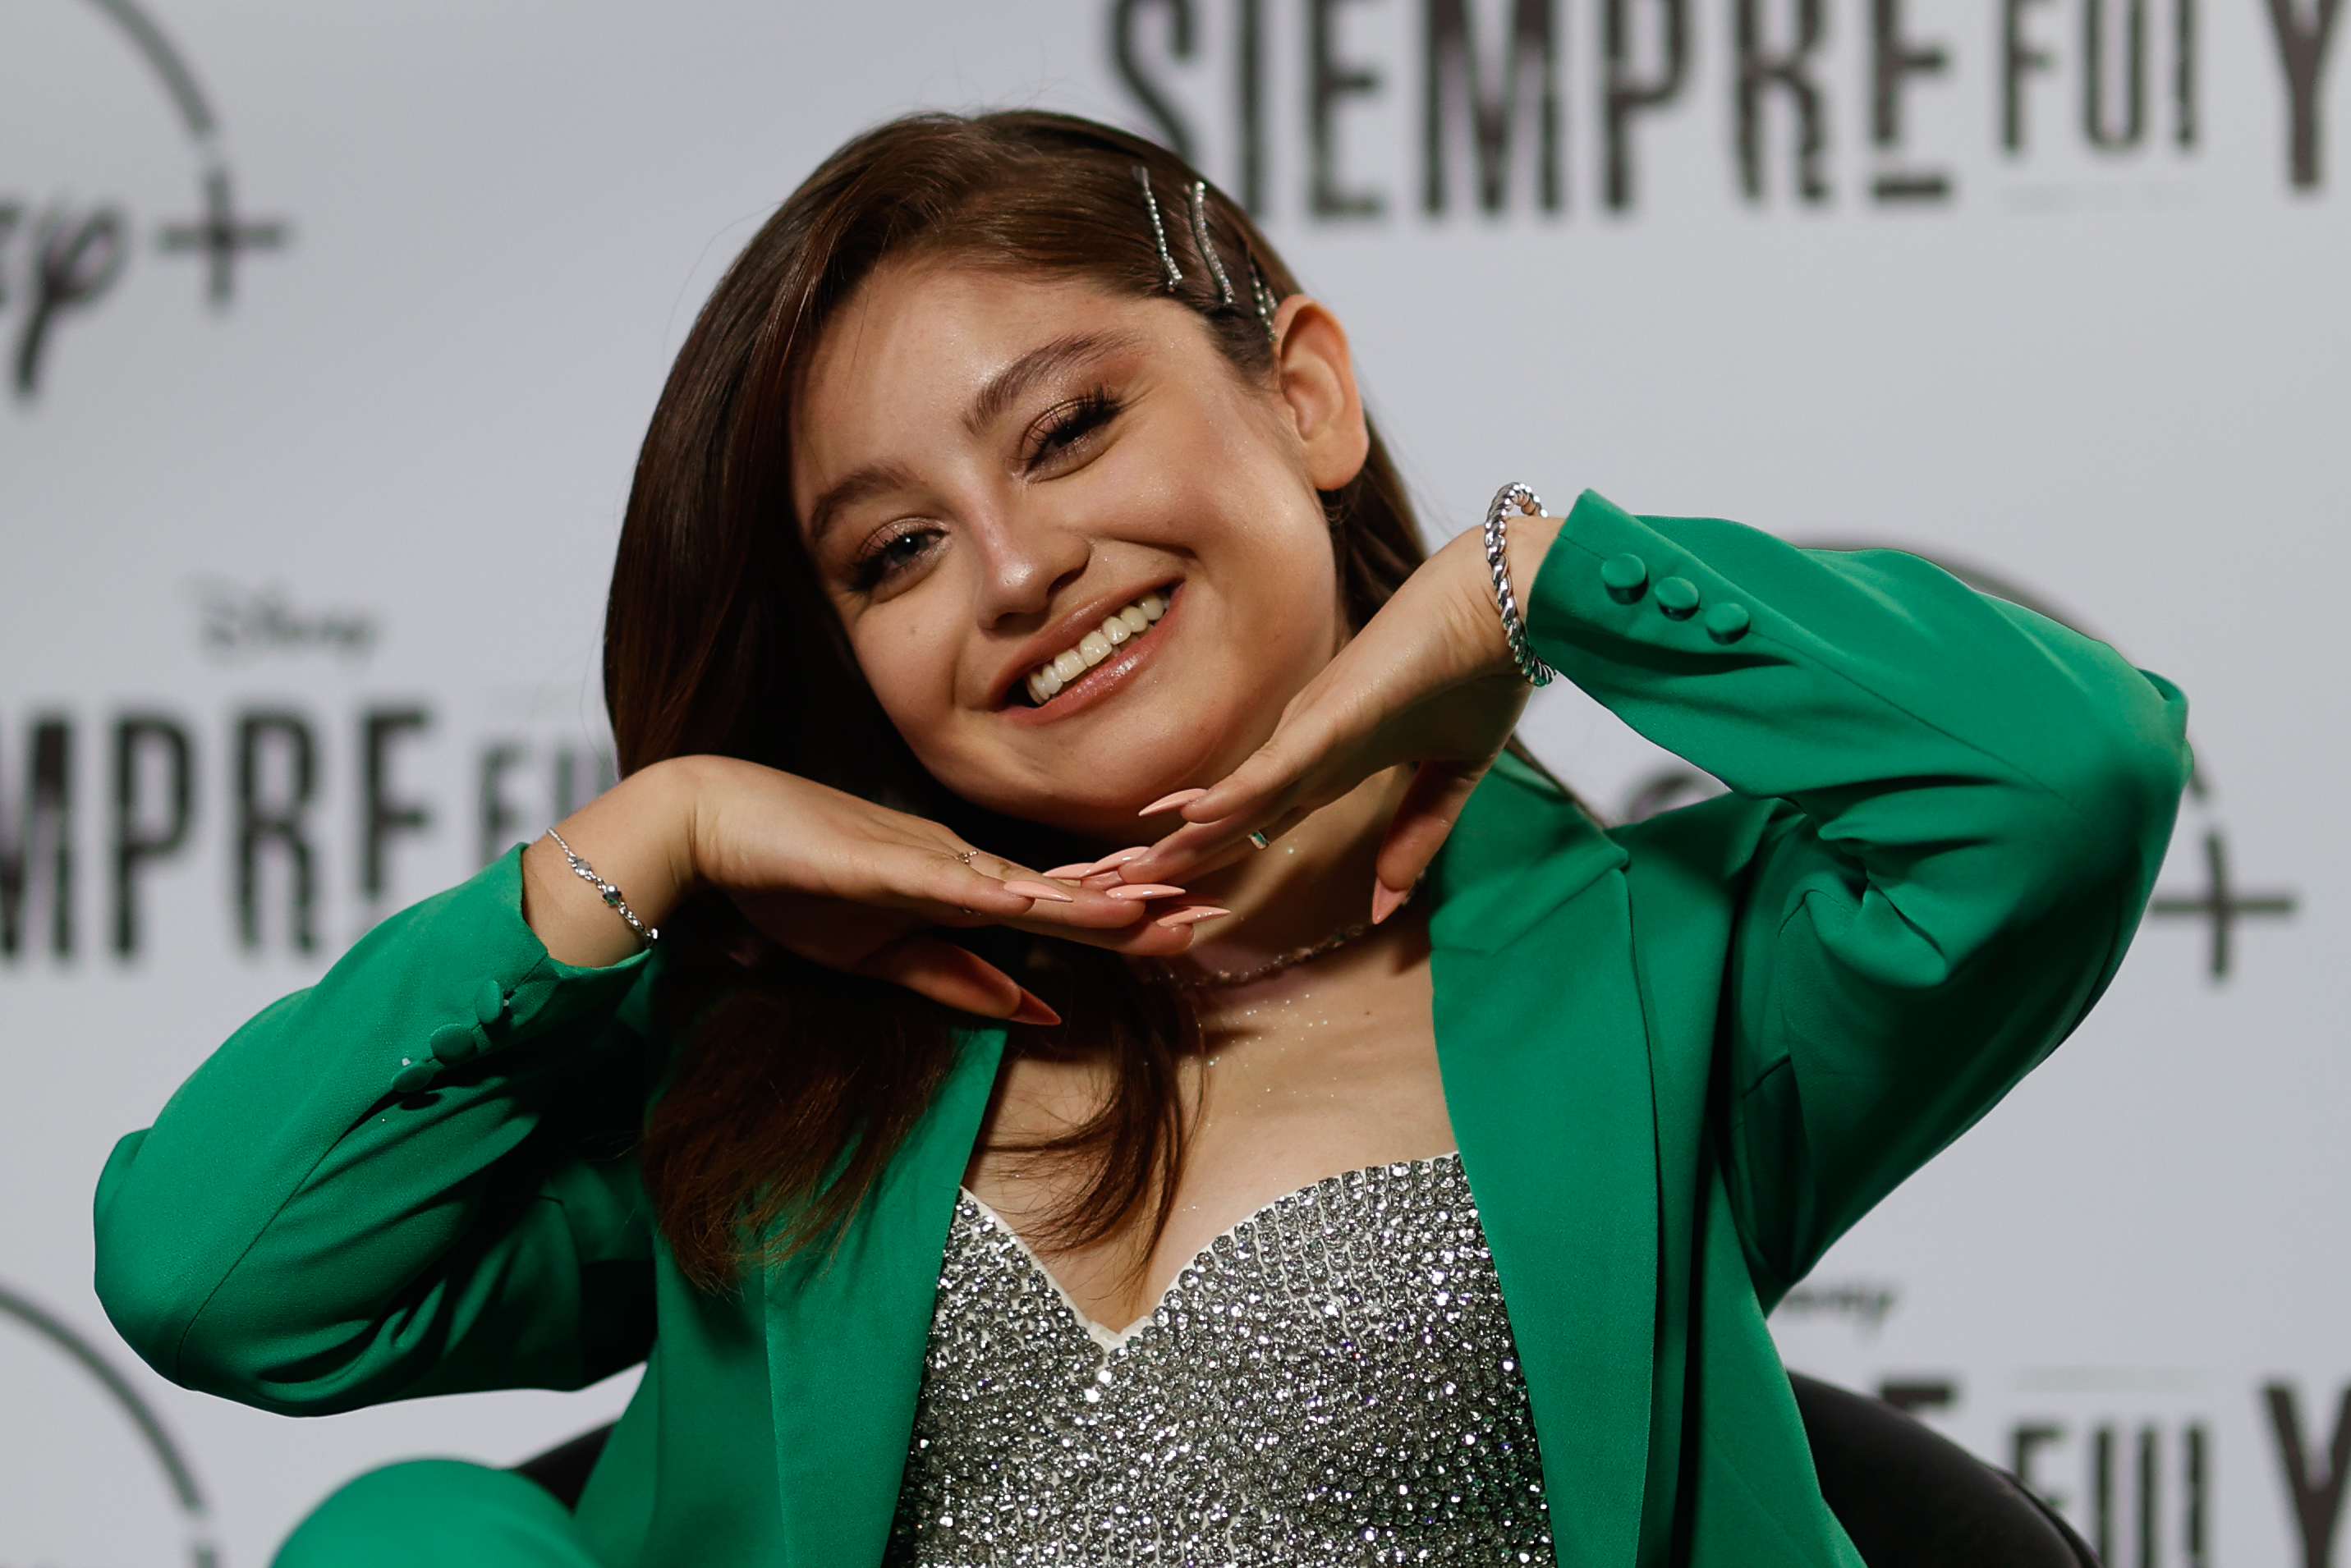 Karol Sevilla, la protagonista de 'Soy Luna', regresa a Disney con la serie  'Siempre fui yo' | Gente | Entretenimiento | El Universo